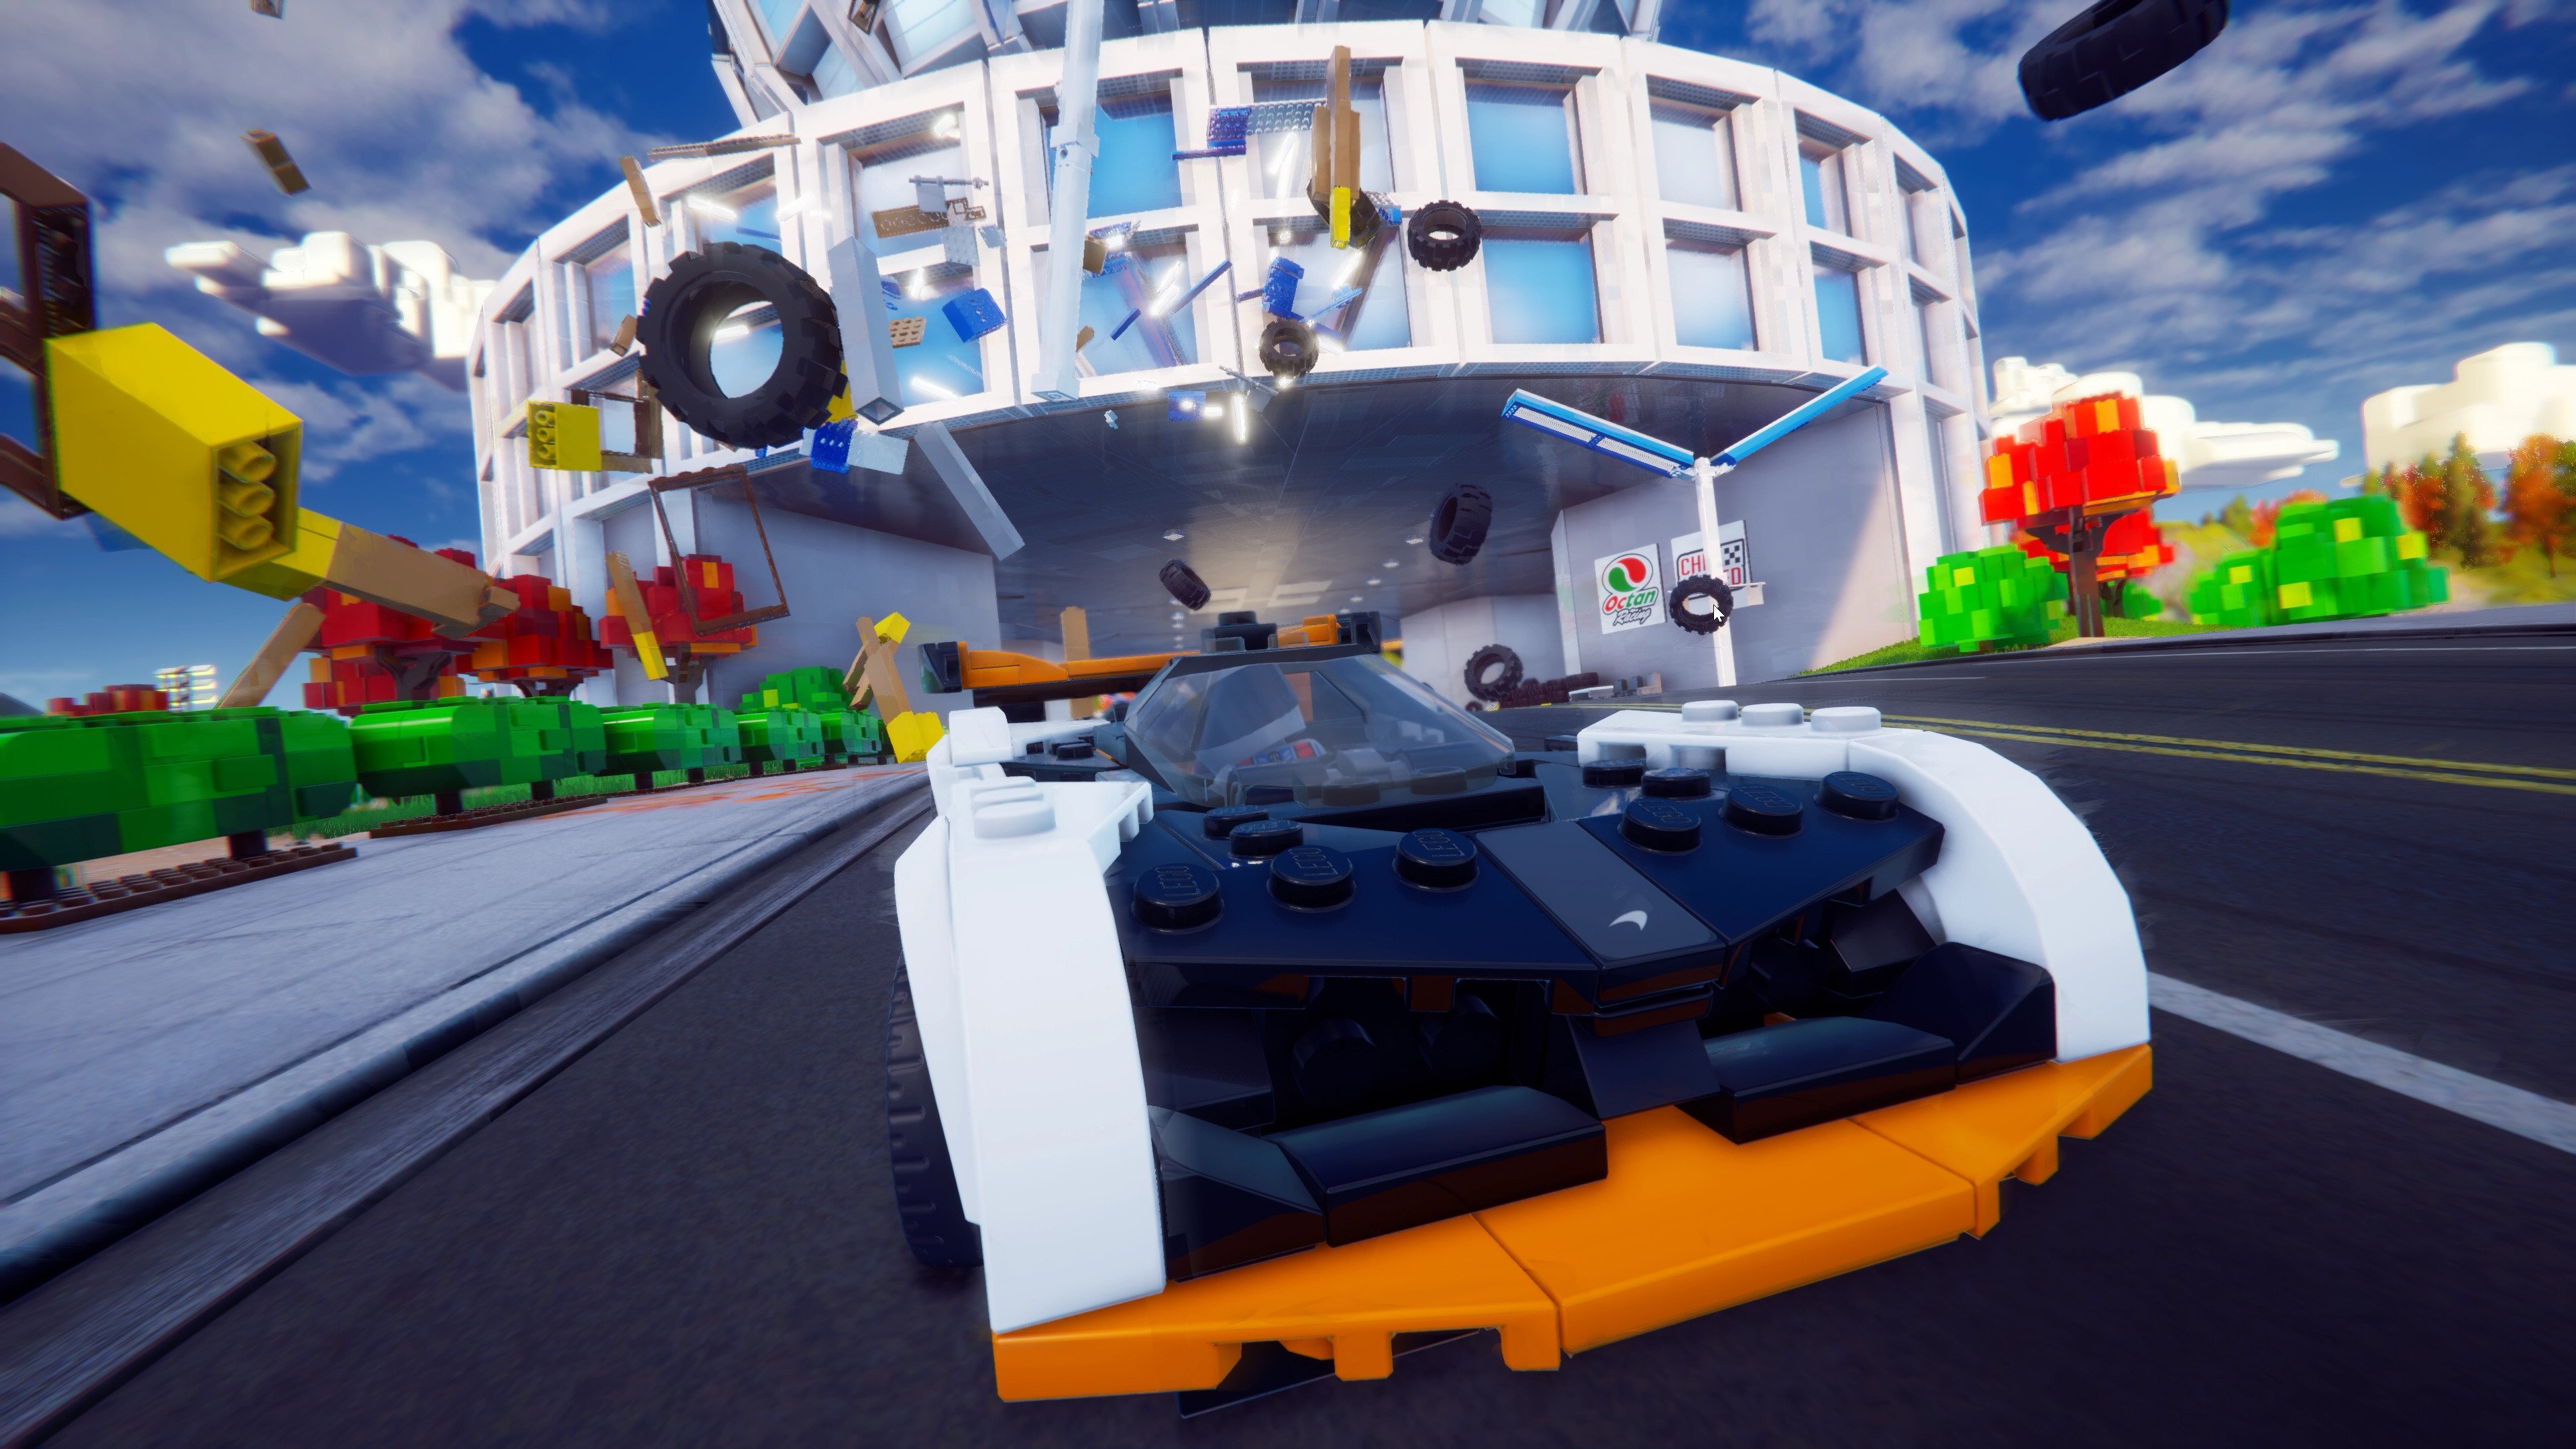 Lego 2K Drive — Jogos para PS4 e PS5